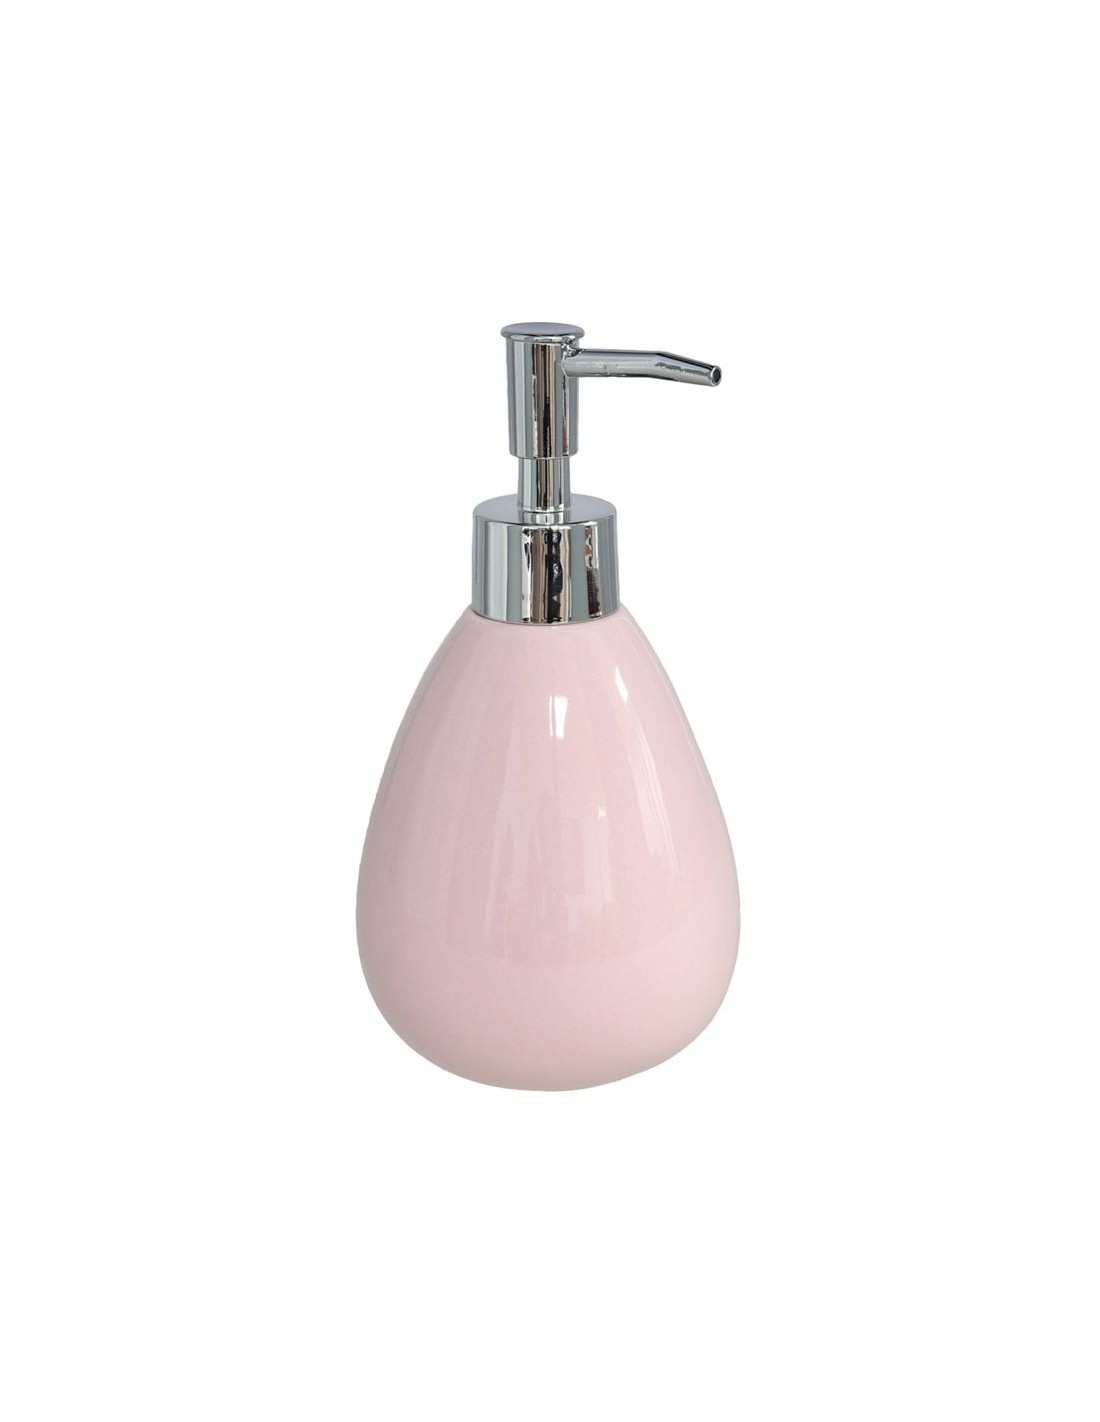 Dispensador jabón baño rosa 350ml Zenia